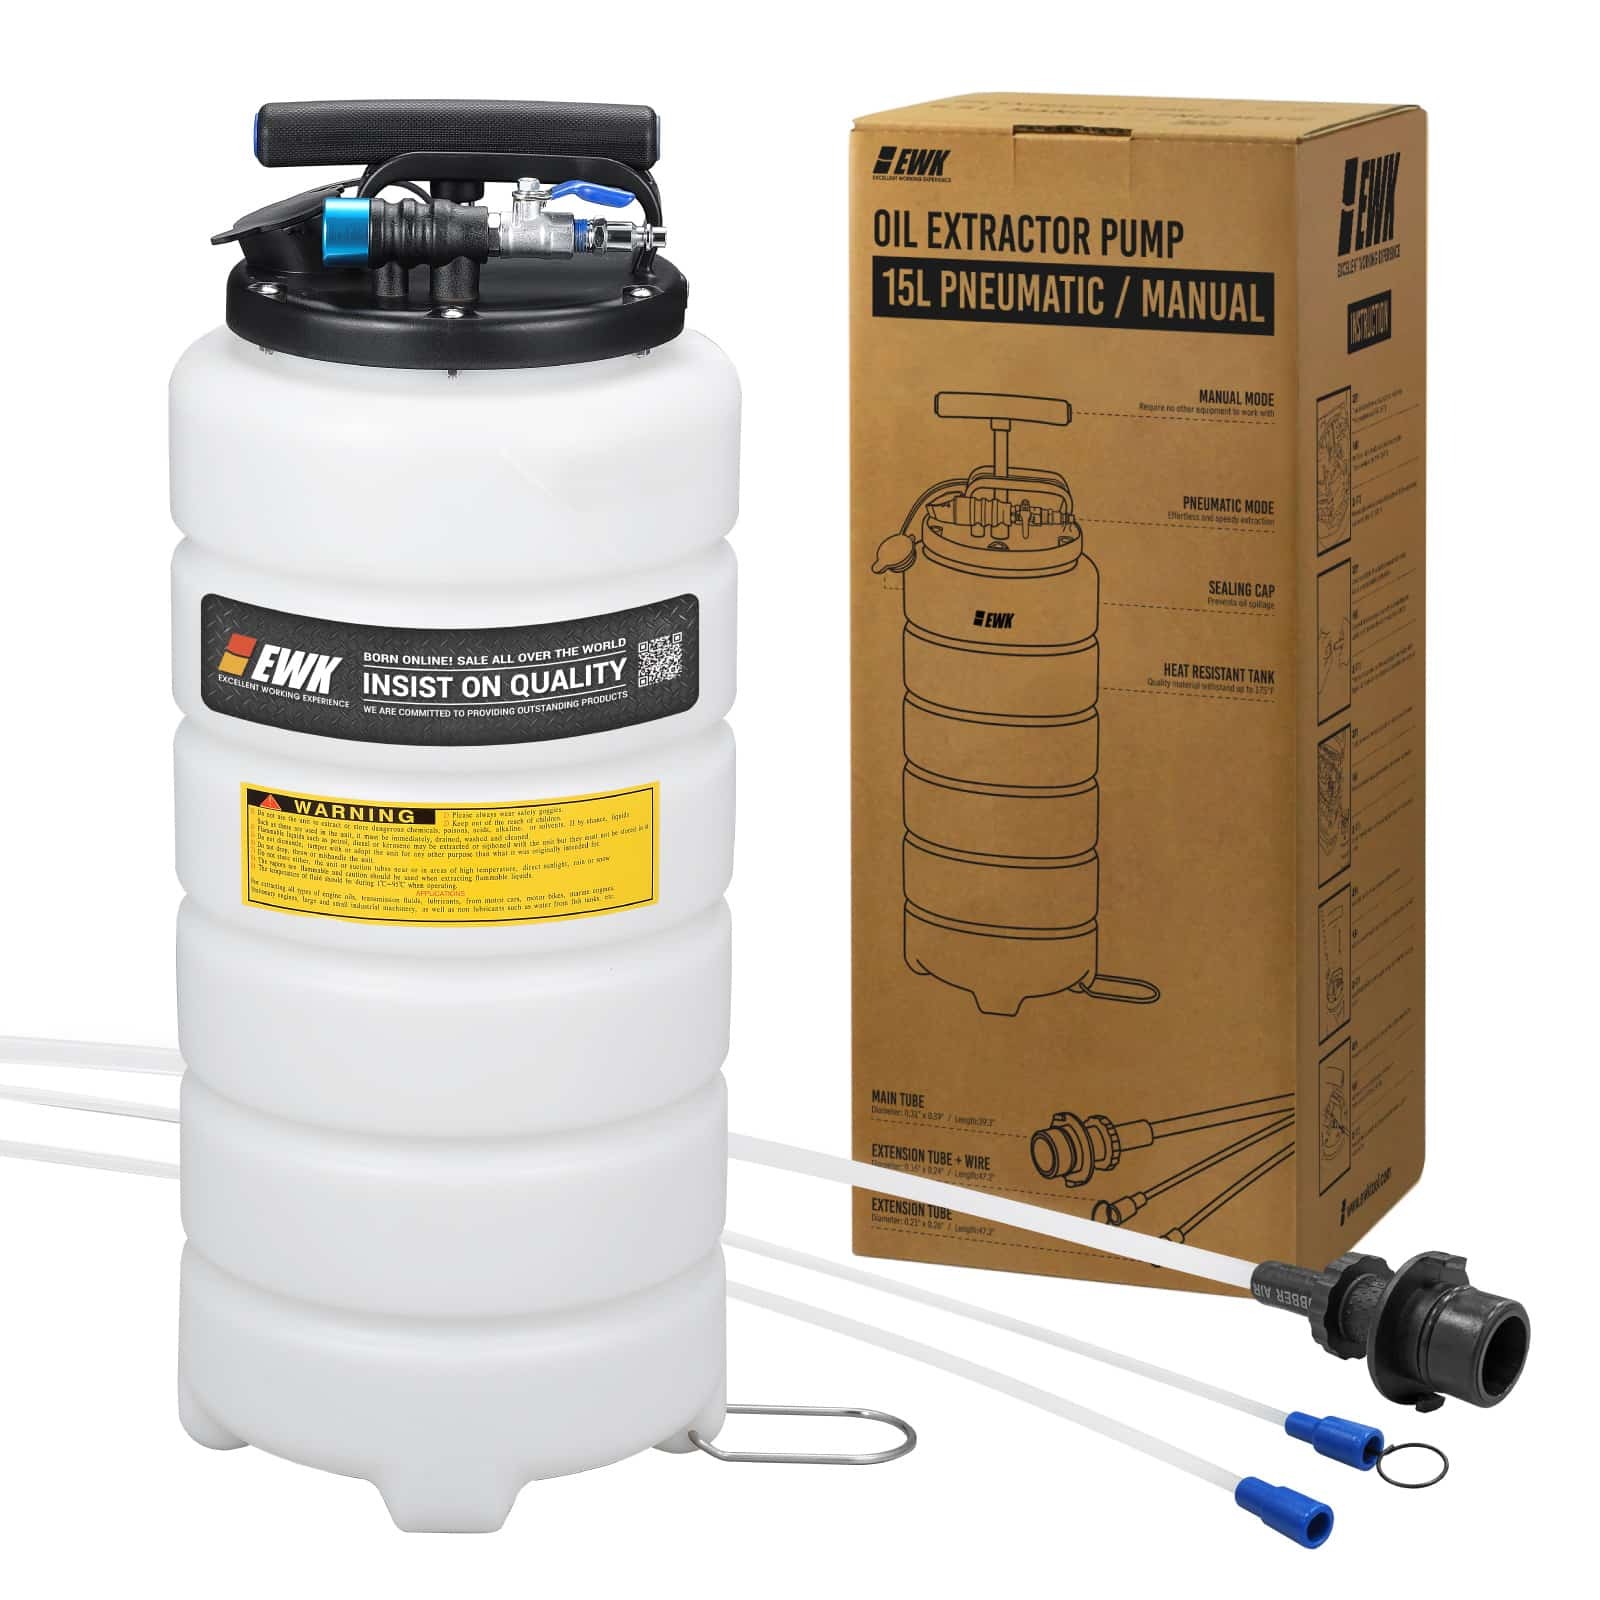 15L Pneumatic / Manual Oil Extractor Pump